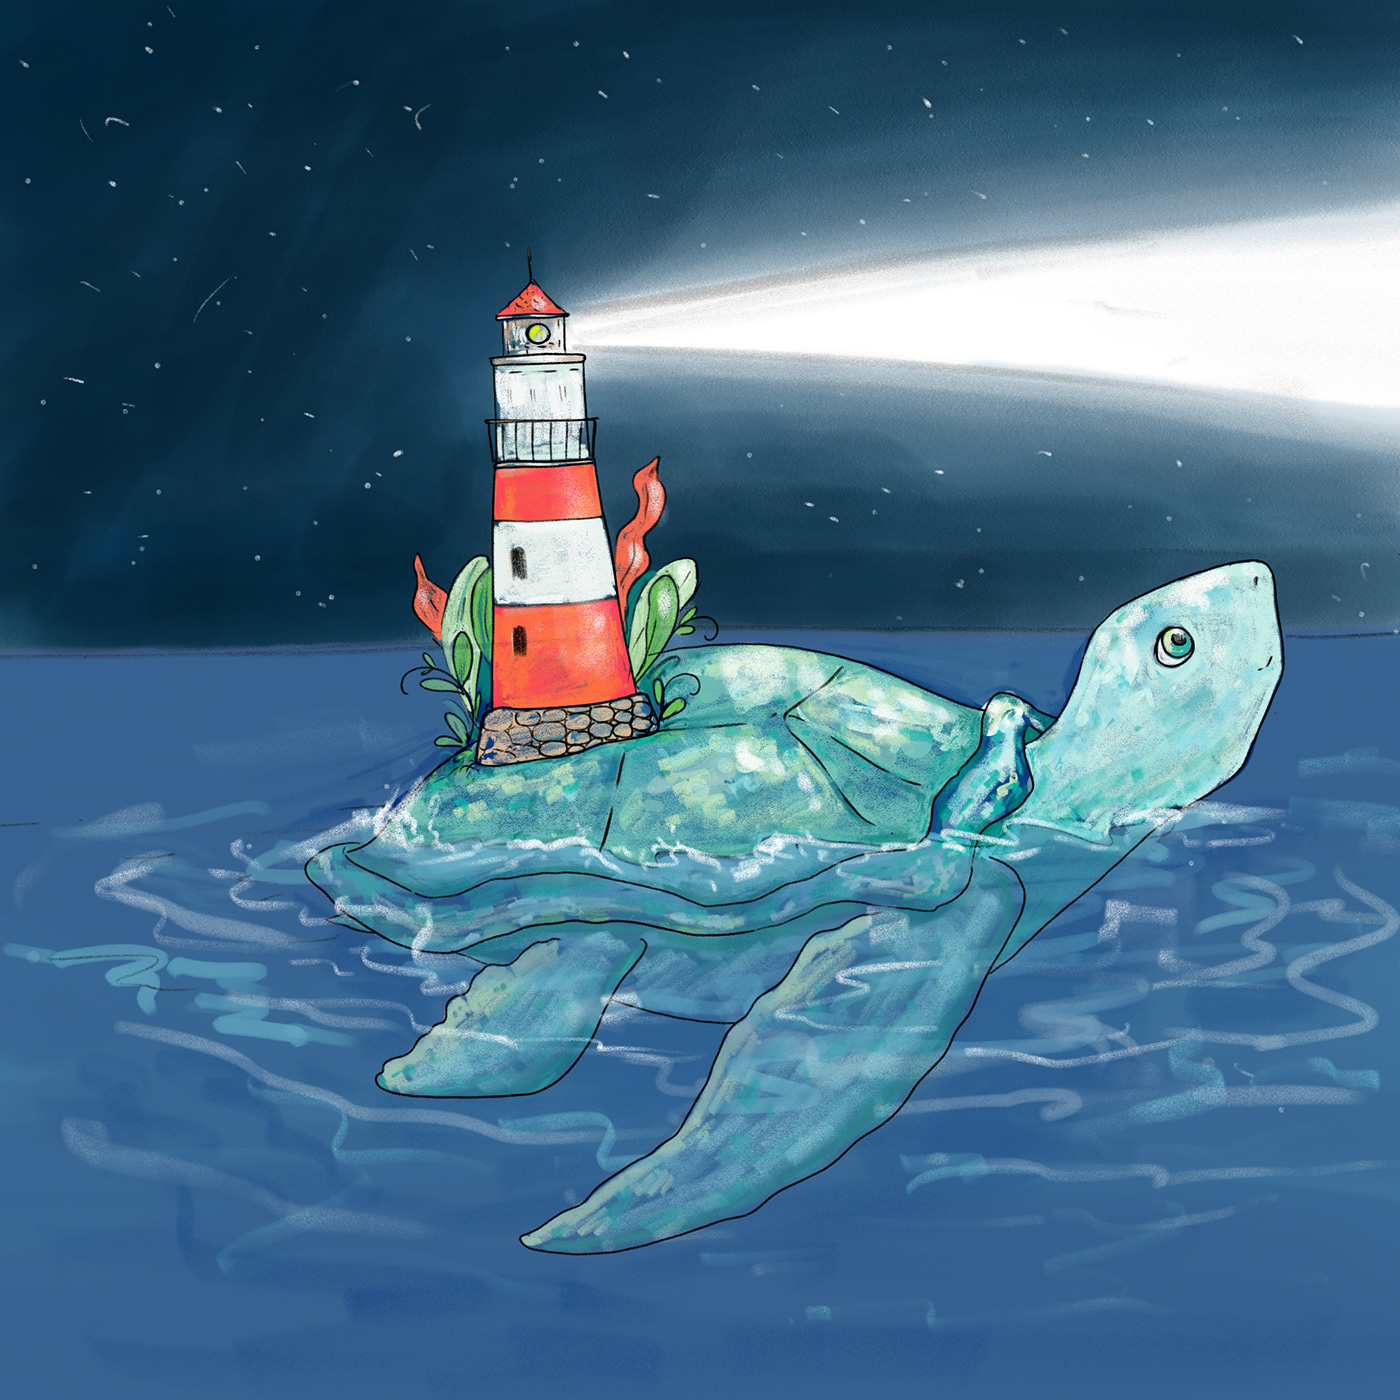 book illustration cartoon characters Digital Art  ILLUSTRATION  night sea sea turtle with lighthouse